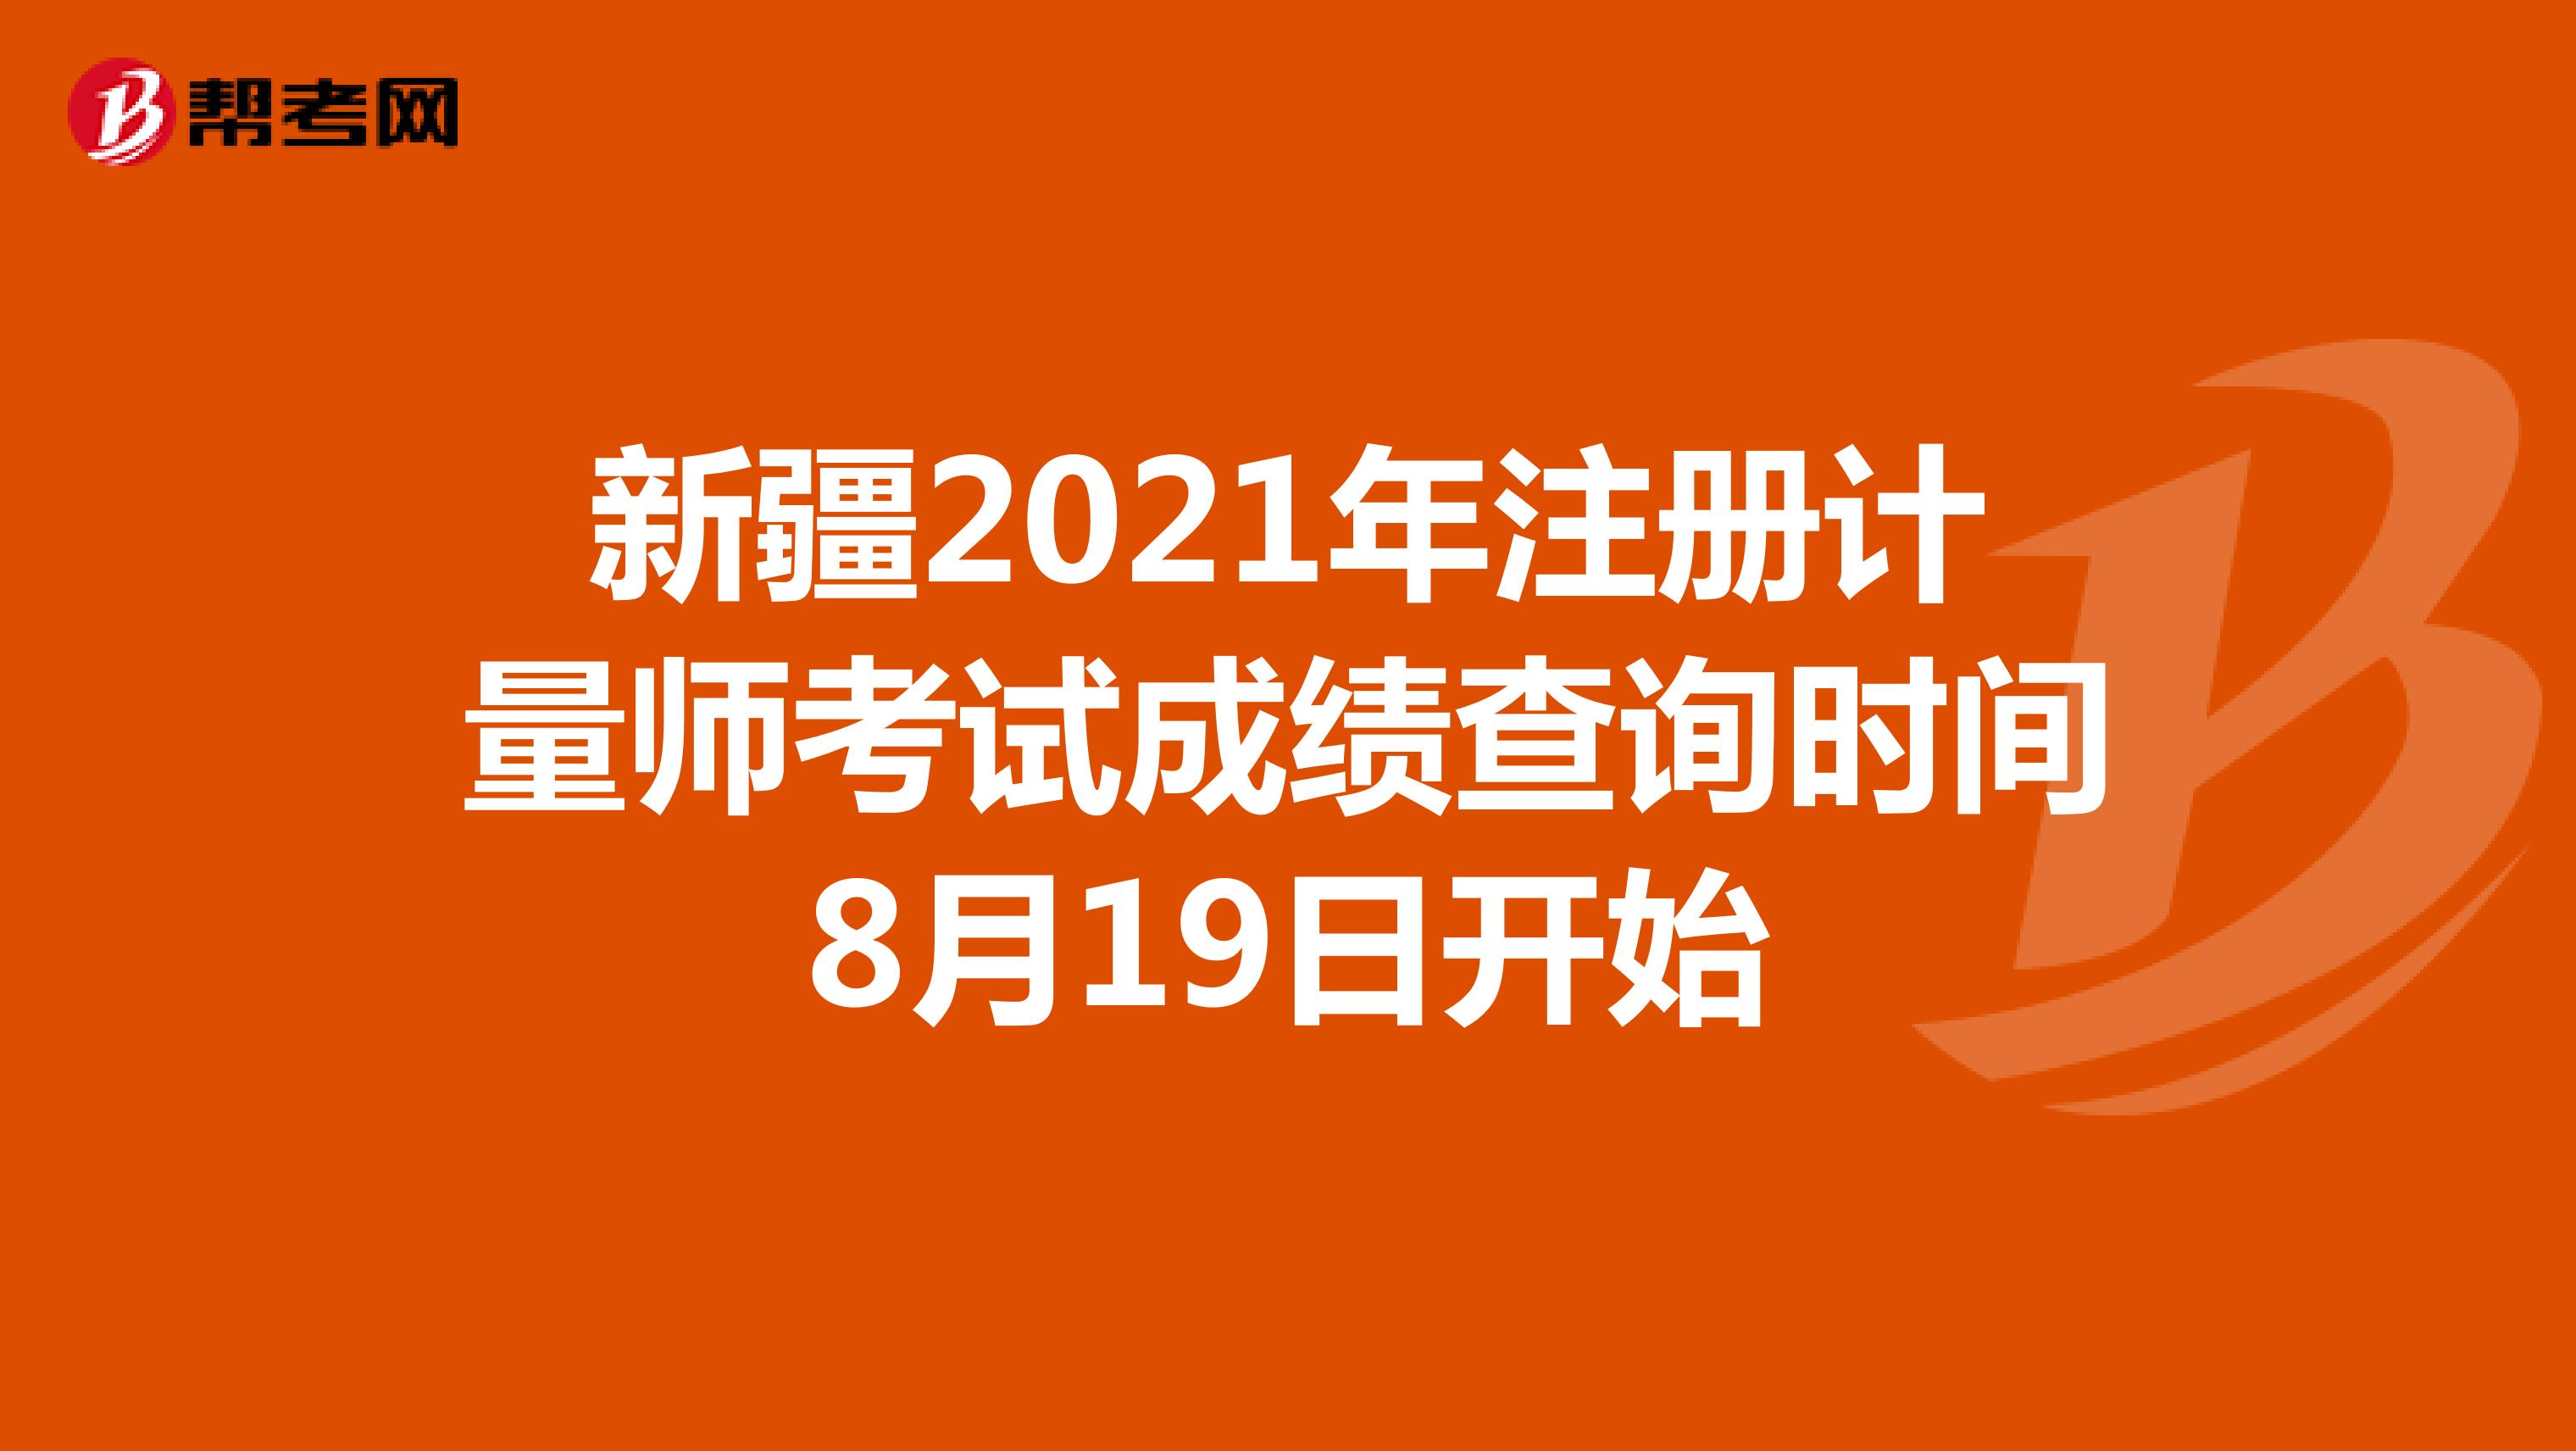 新疆2021年注册计量师考试成绩查询时间8月19日开始